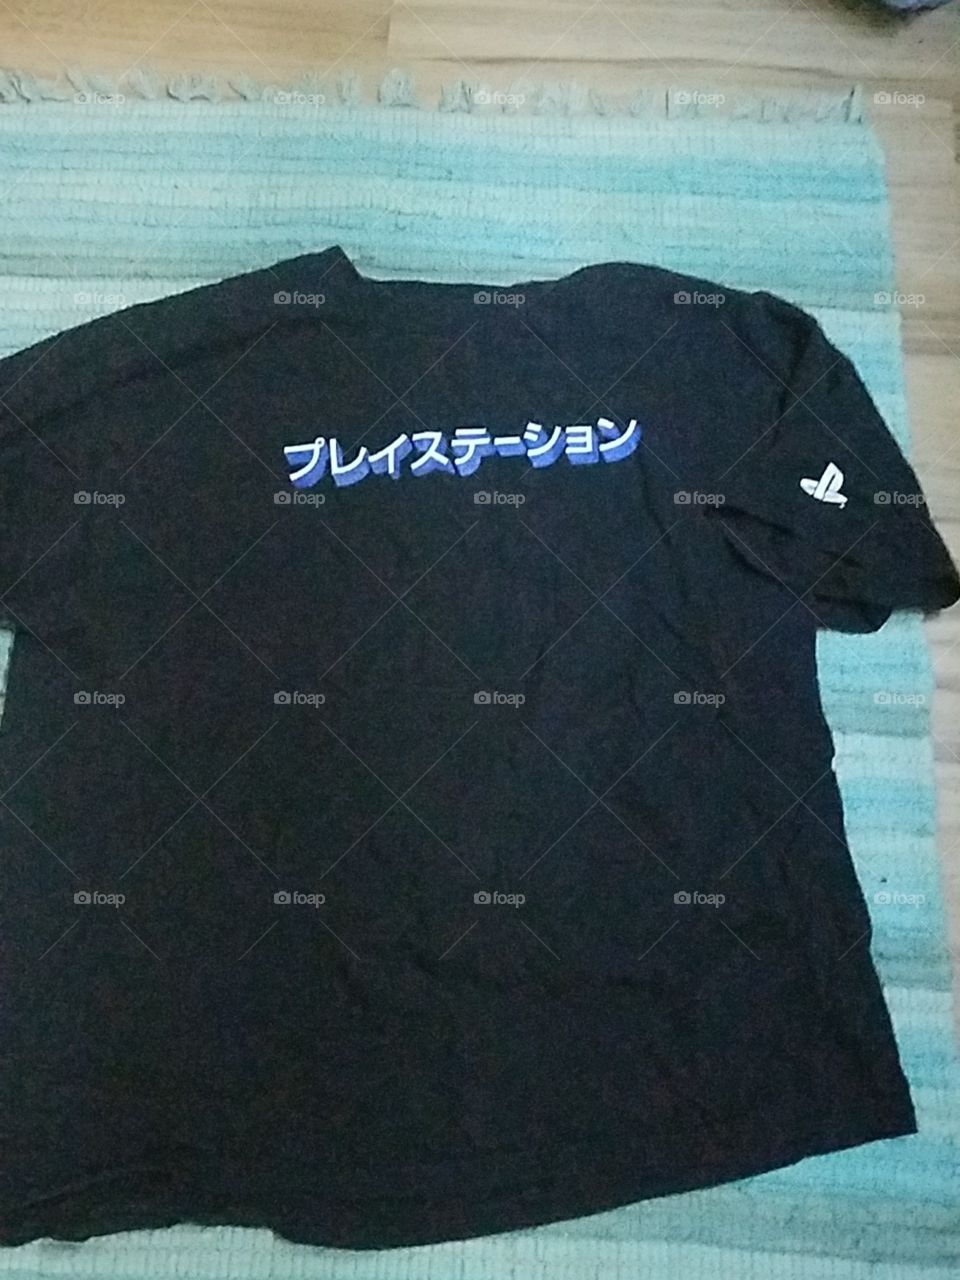 PlayStation shirt (I think it says Electronics)